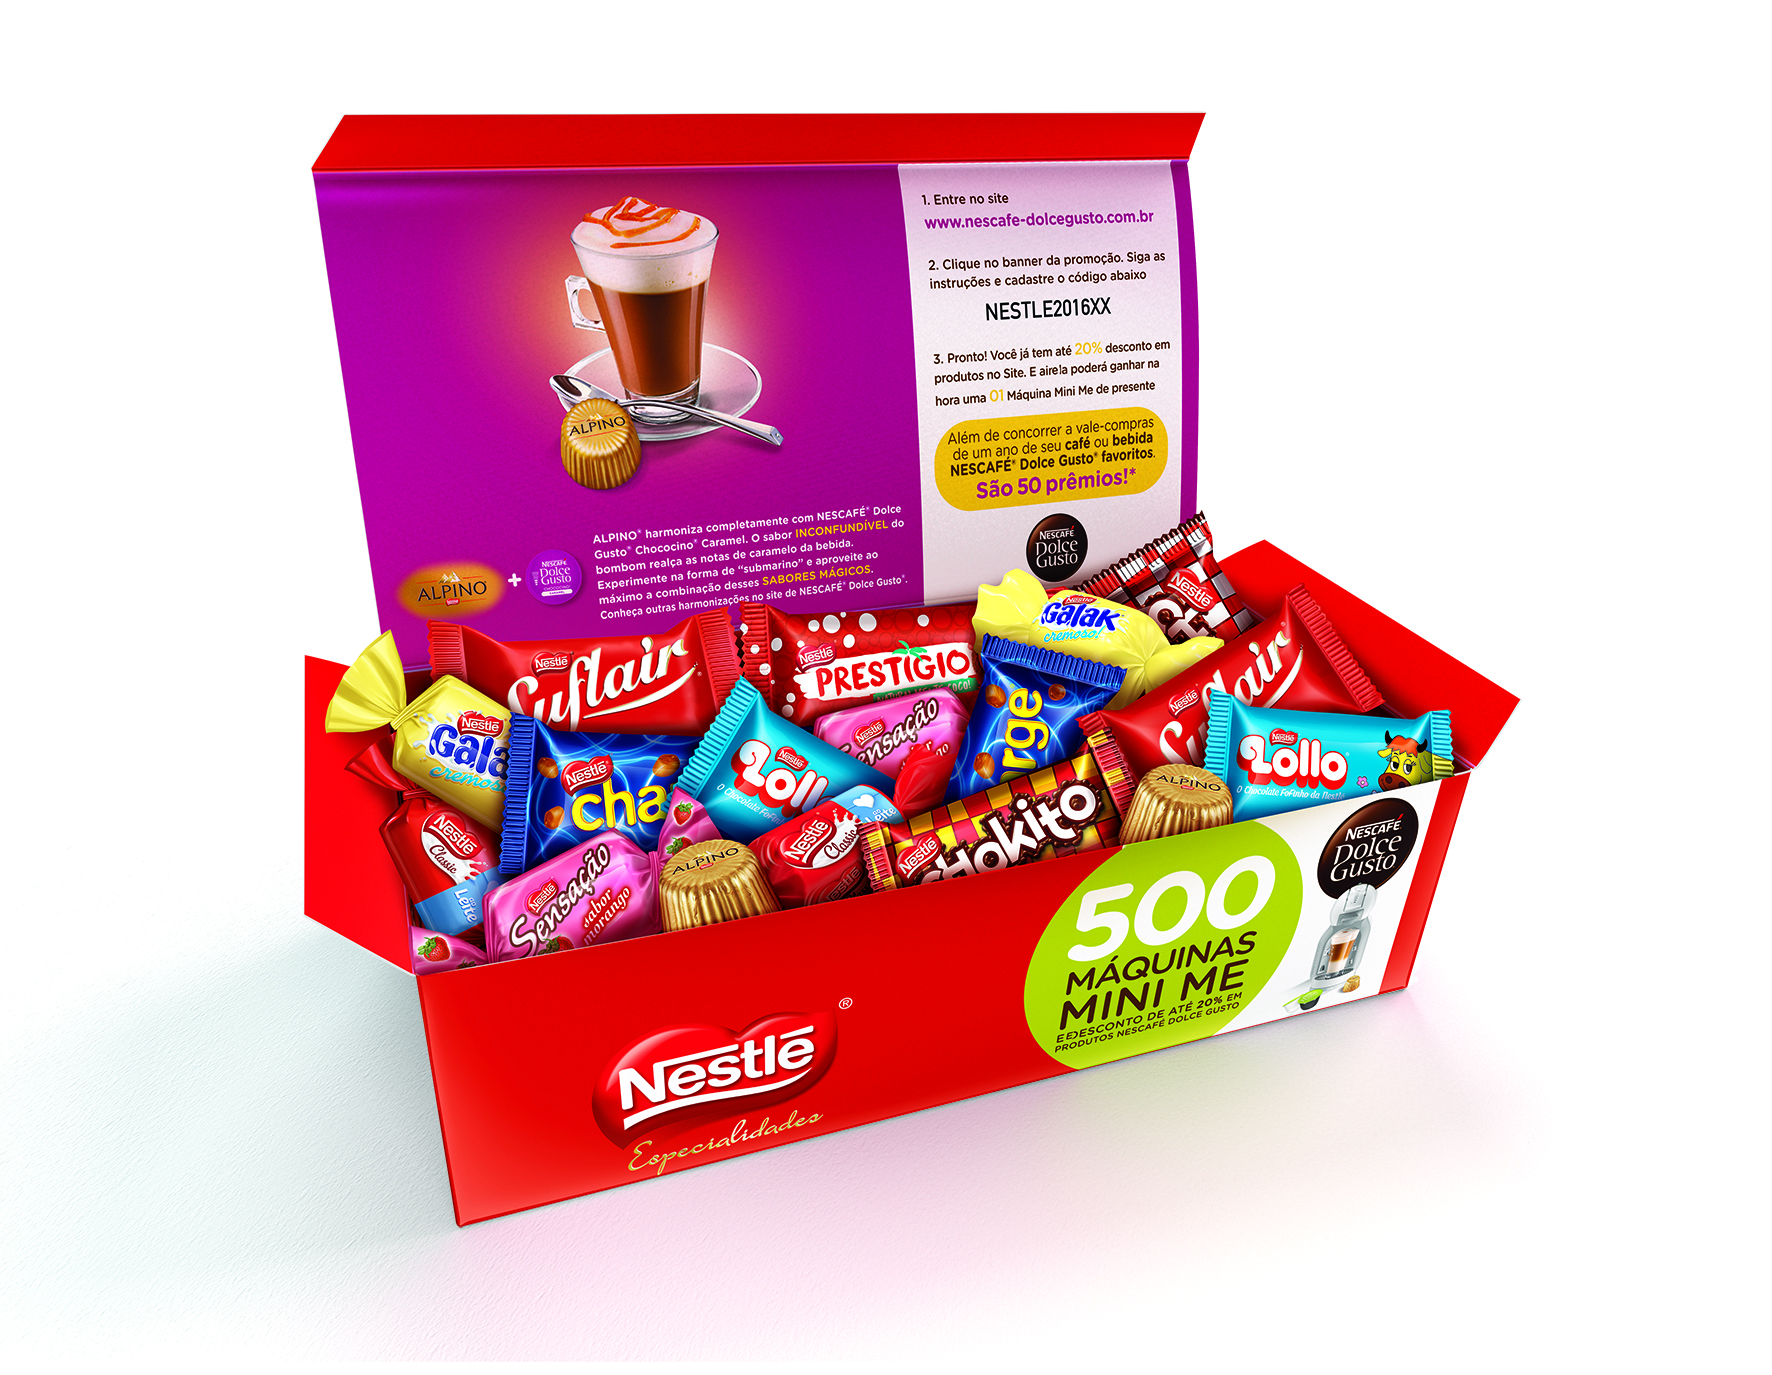 Nestlé lança promoção de Chocolates com Nescafé Dolce Gusto